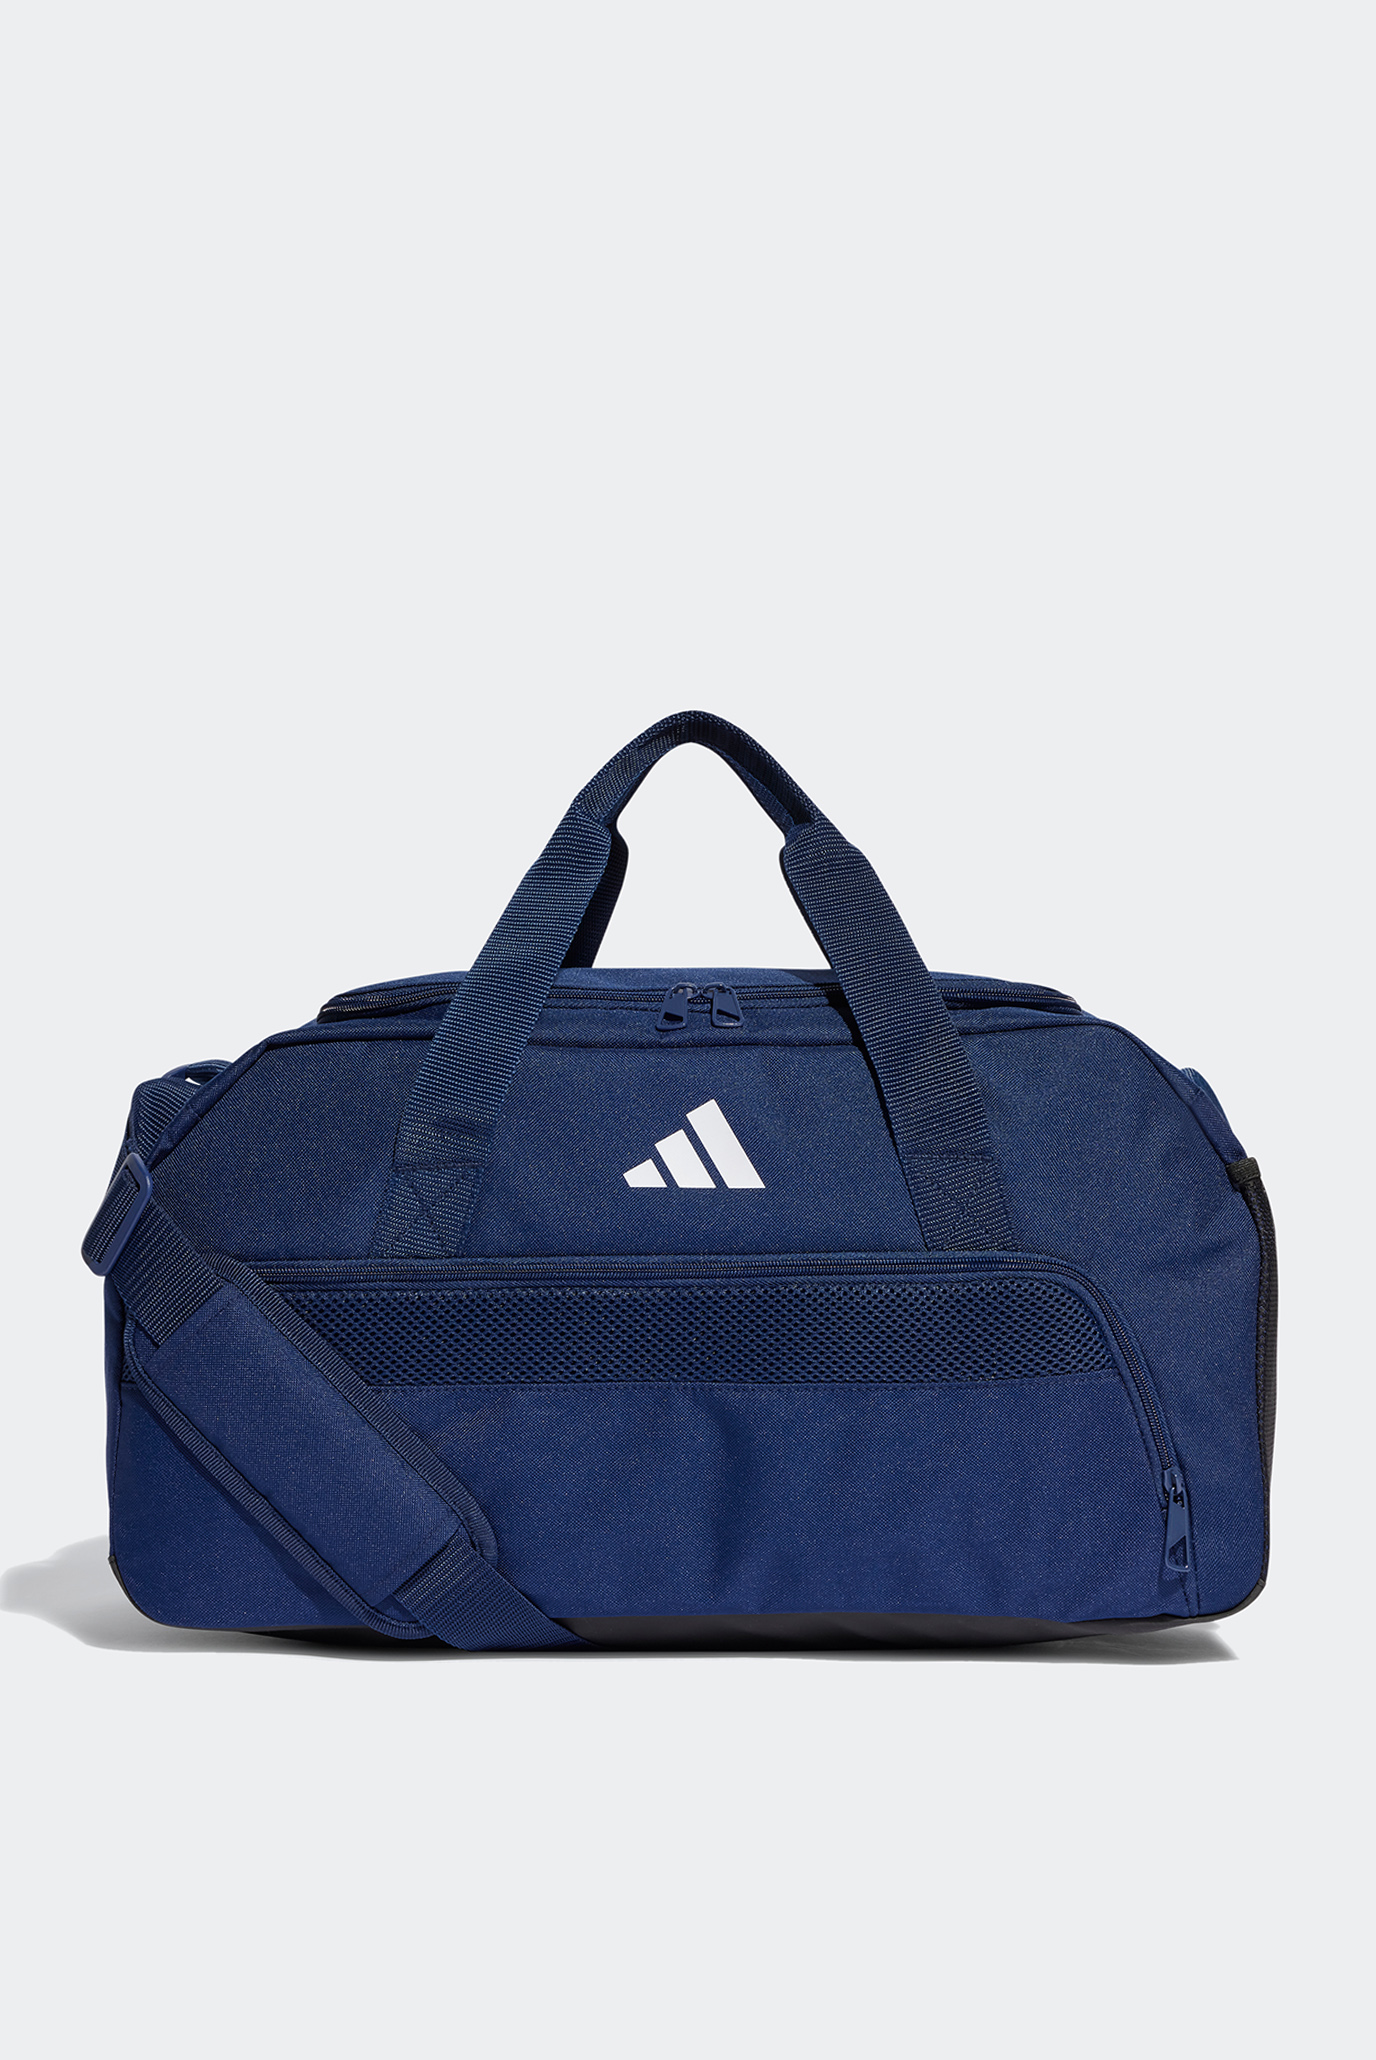 Синяя спортивная сумка Tiro League Duffel Bag Small 1